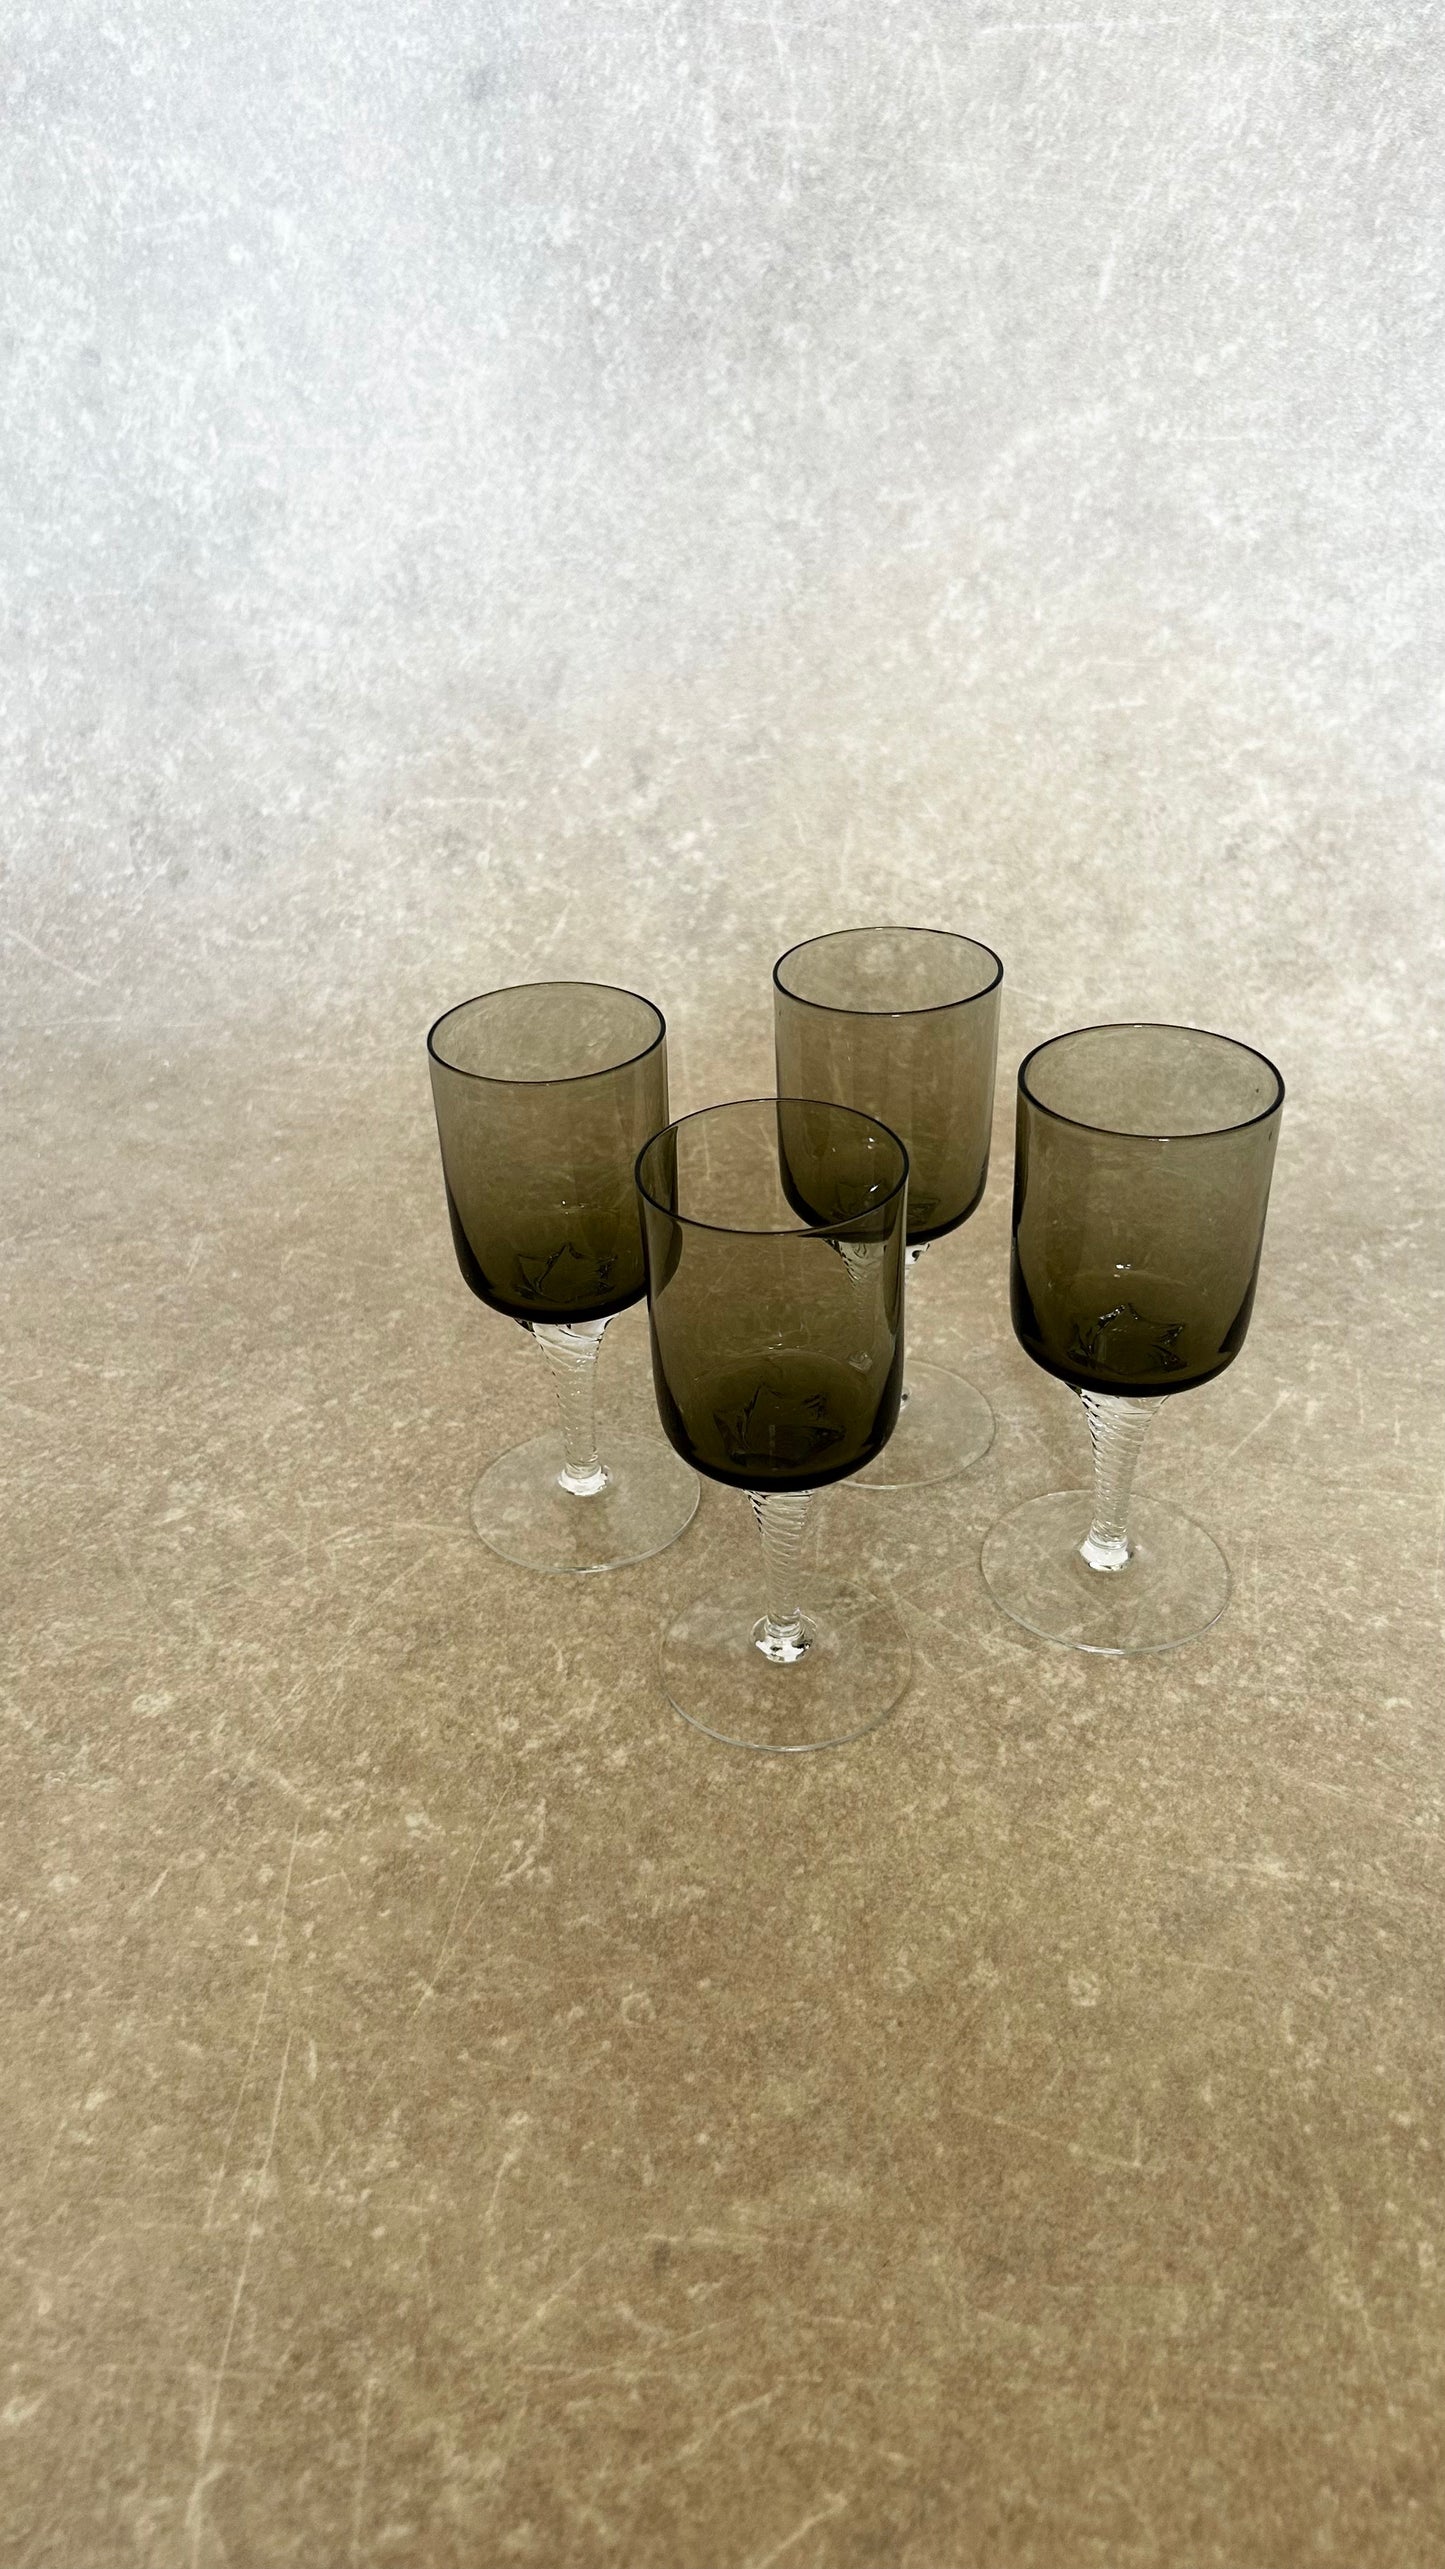 Vintage Wine Glasses | Set of 4